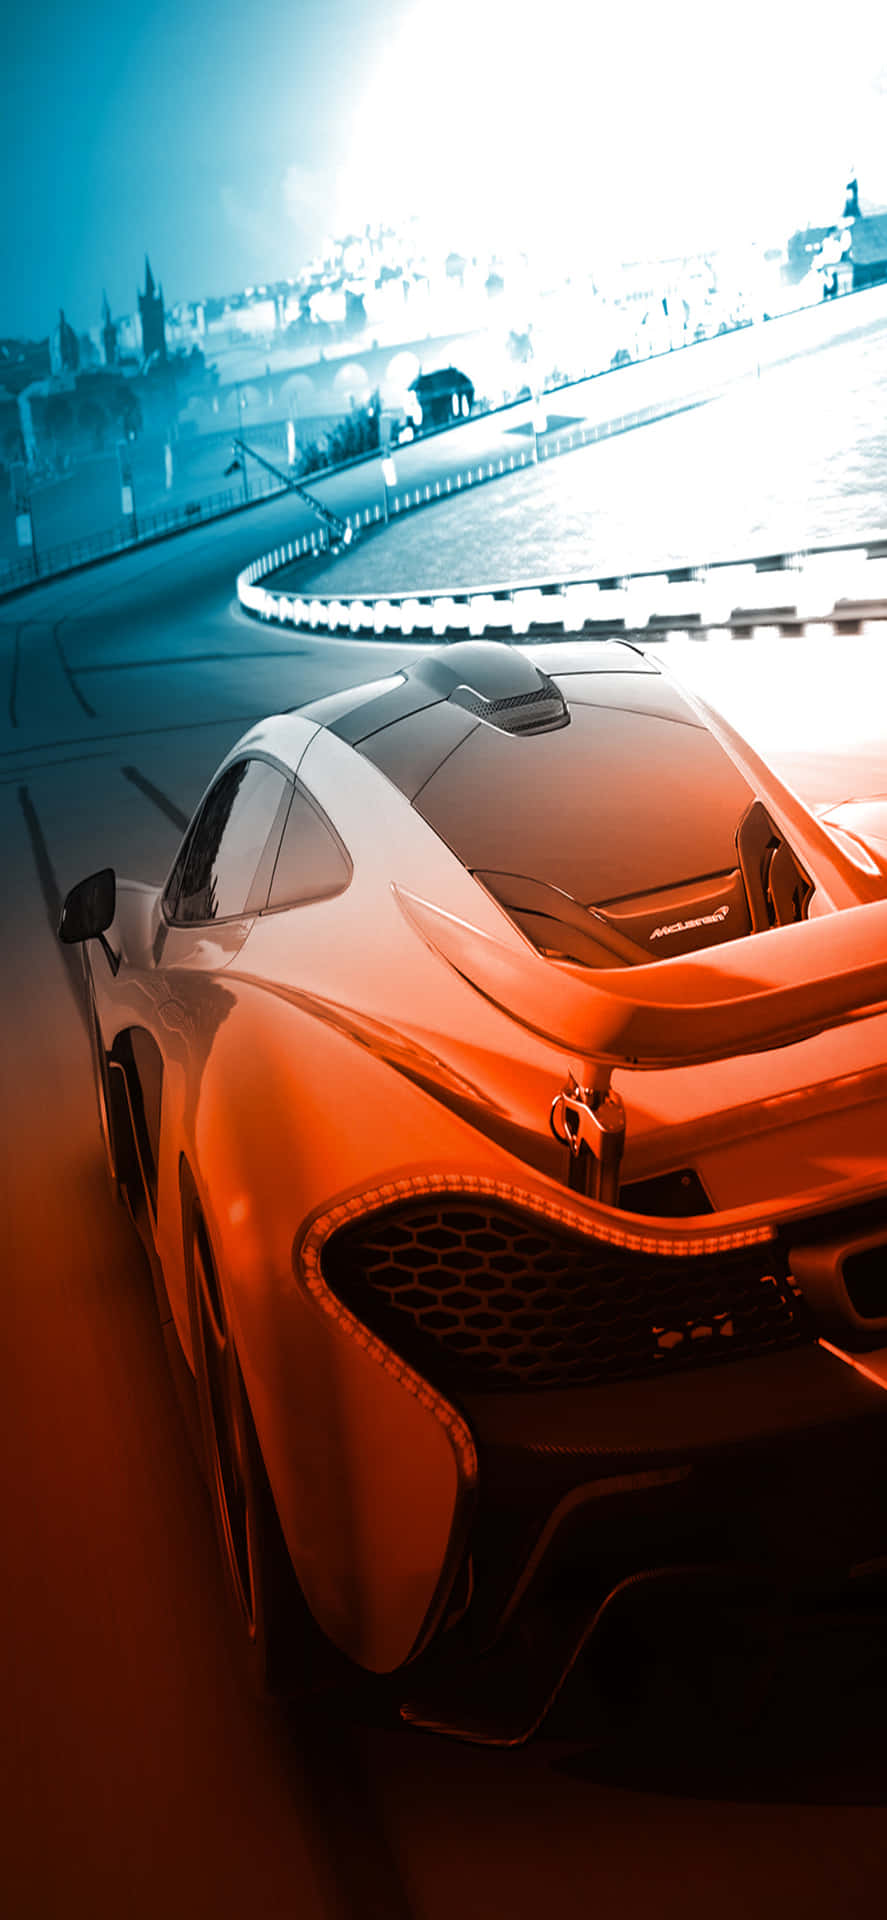 McLaren P1 Helios iPhone X Forza Motorsport 7 Background